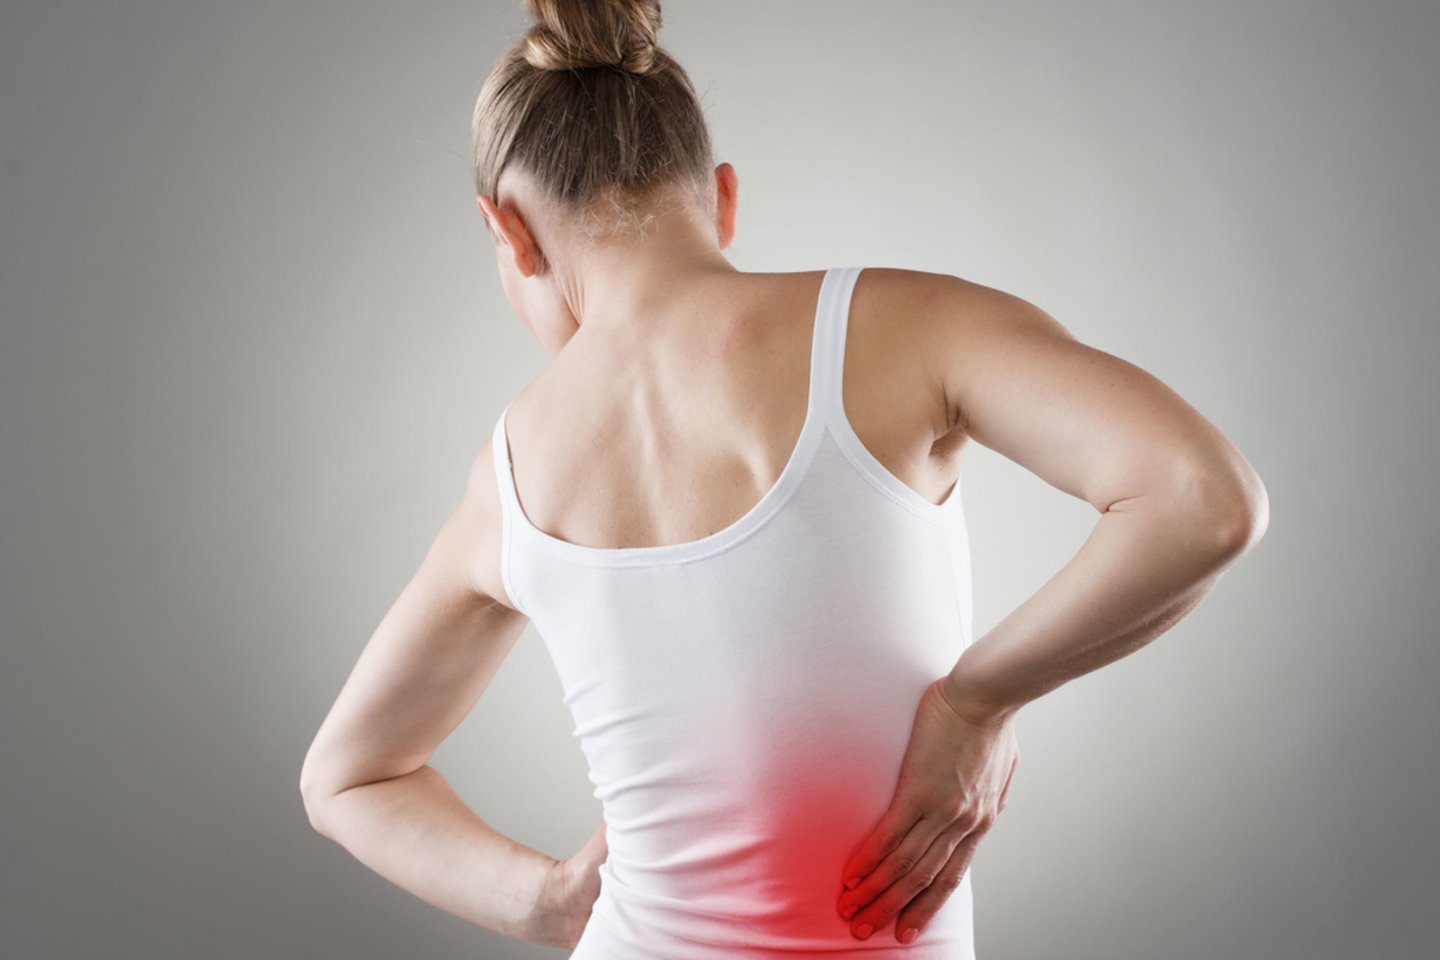 Amerikos chiropraktikų asociacijos duomenimis, pusė darbingo amžiaus amerikiečių teigia patiriantys nugaros skausmus.<br>123rf nuotr.